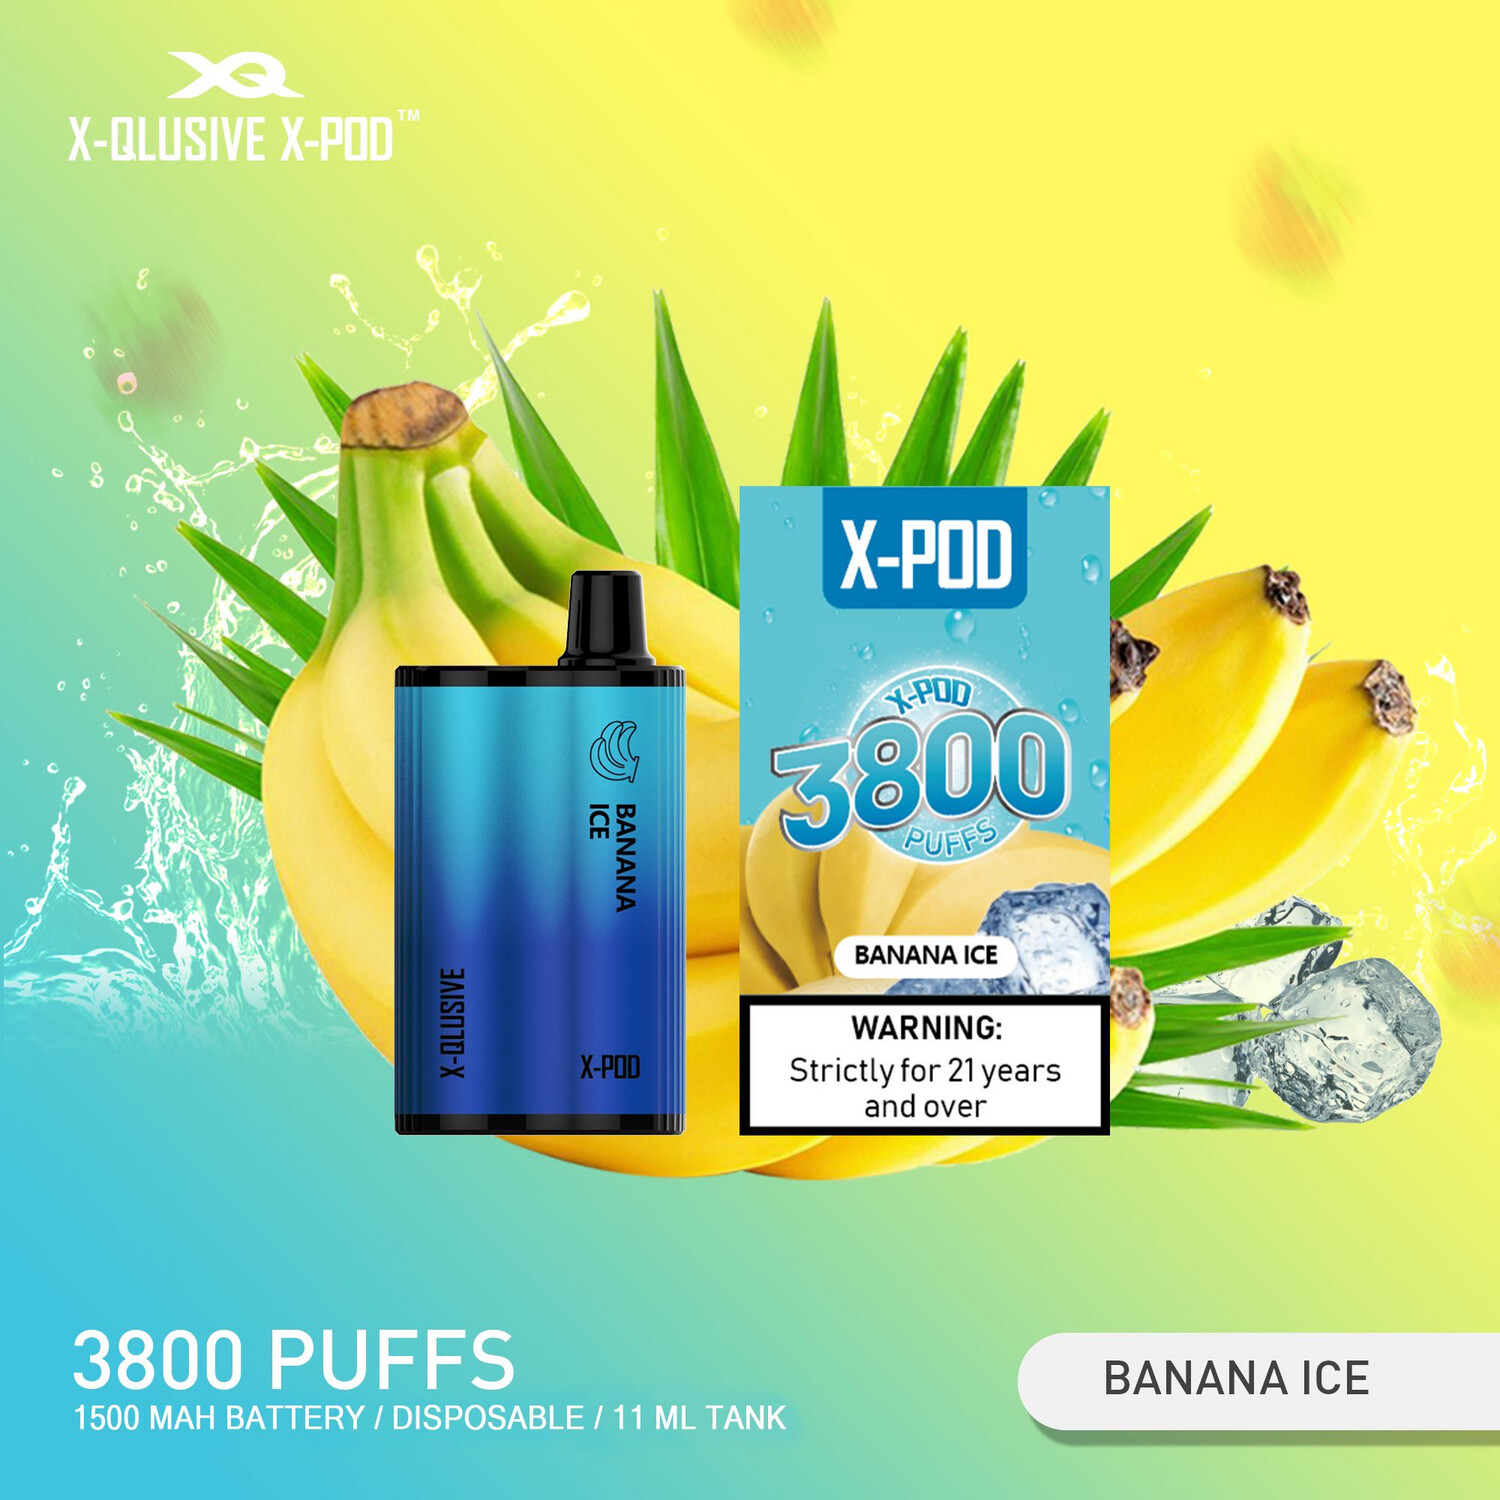 XPOD Banana ice